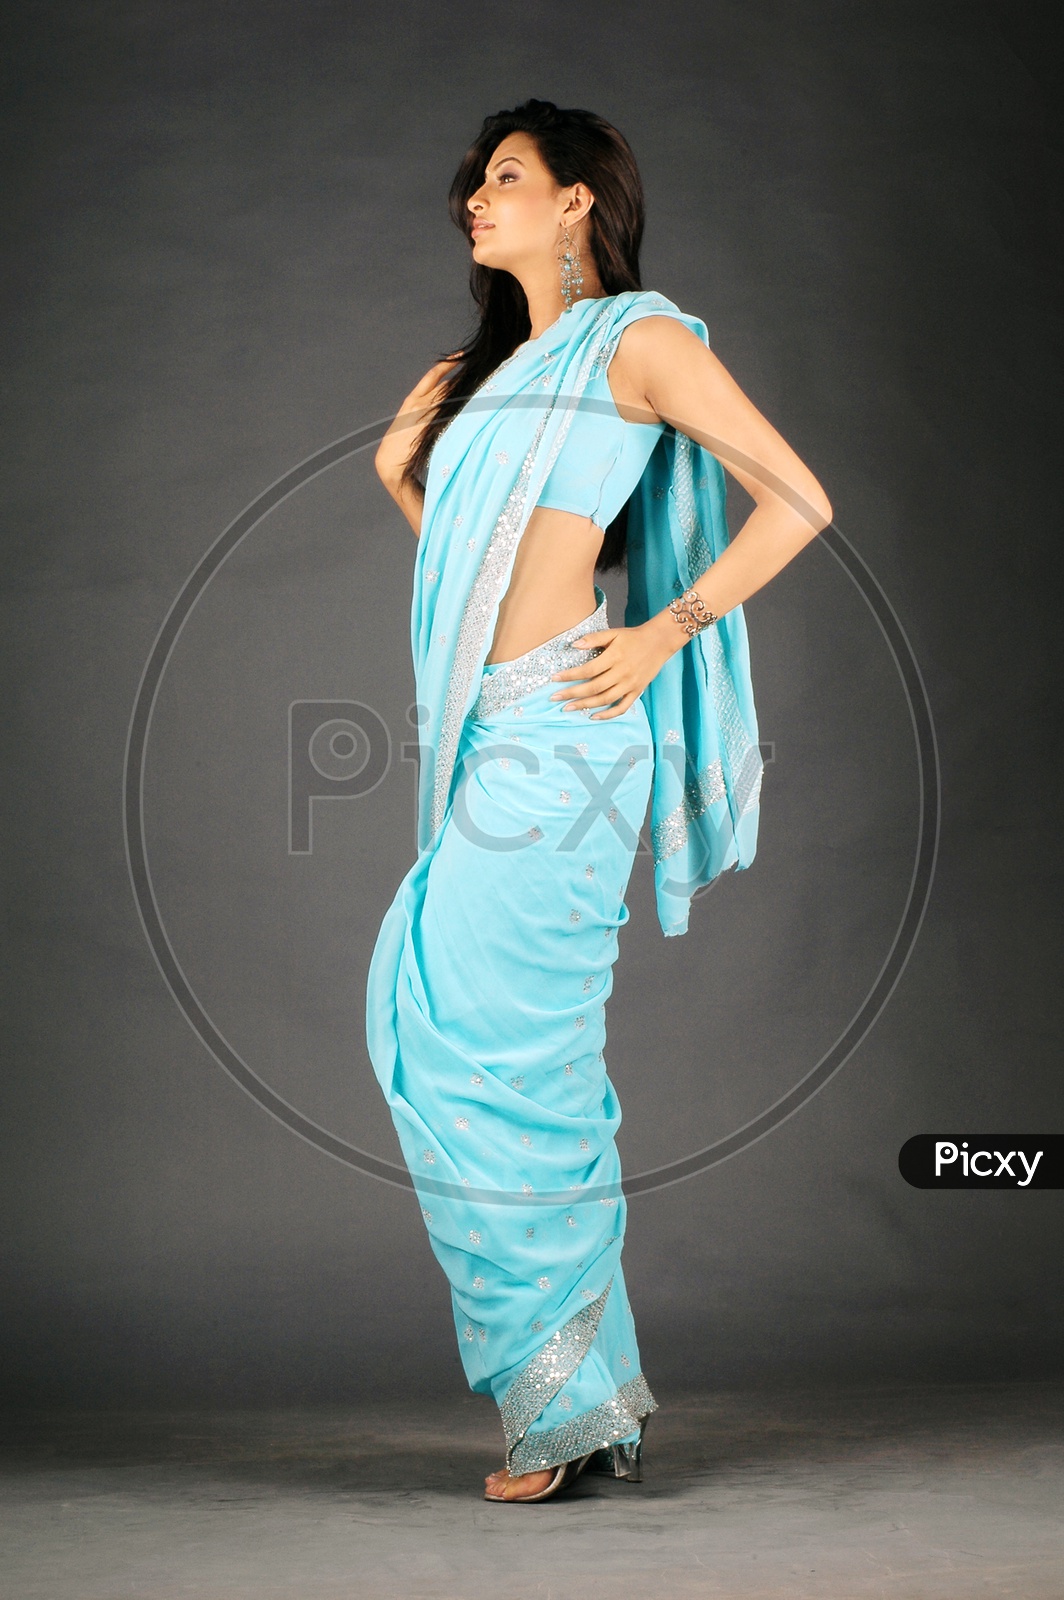 A female model in blue saree posing in a studio